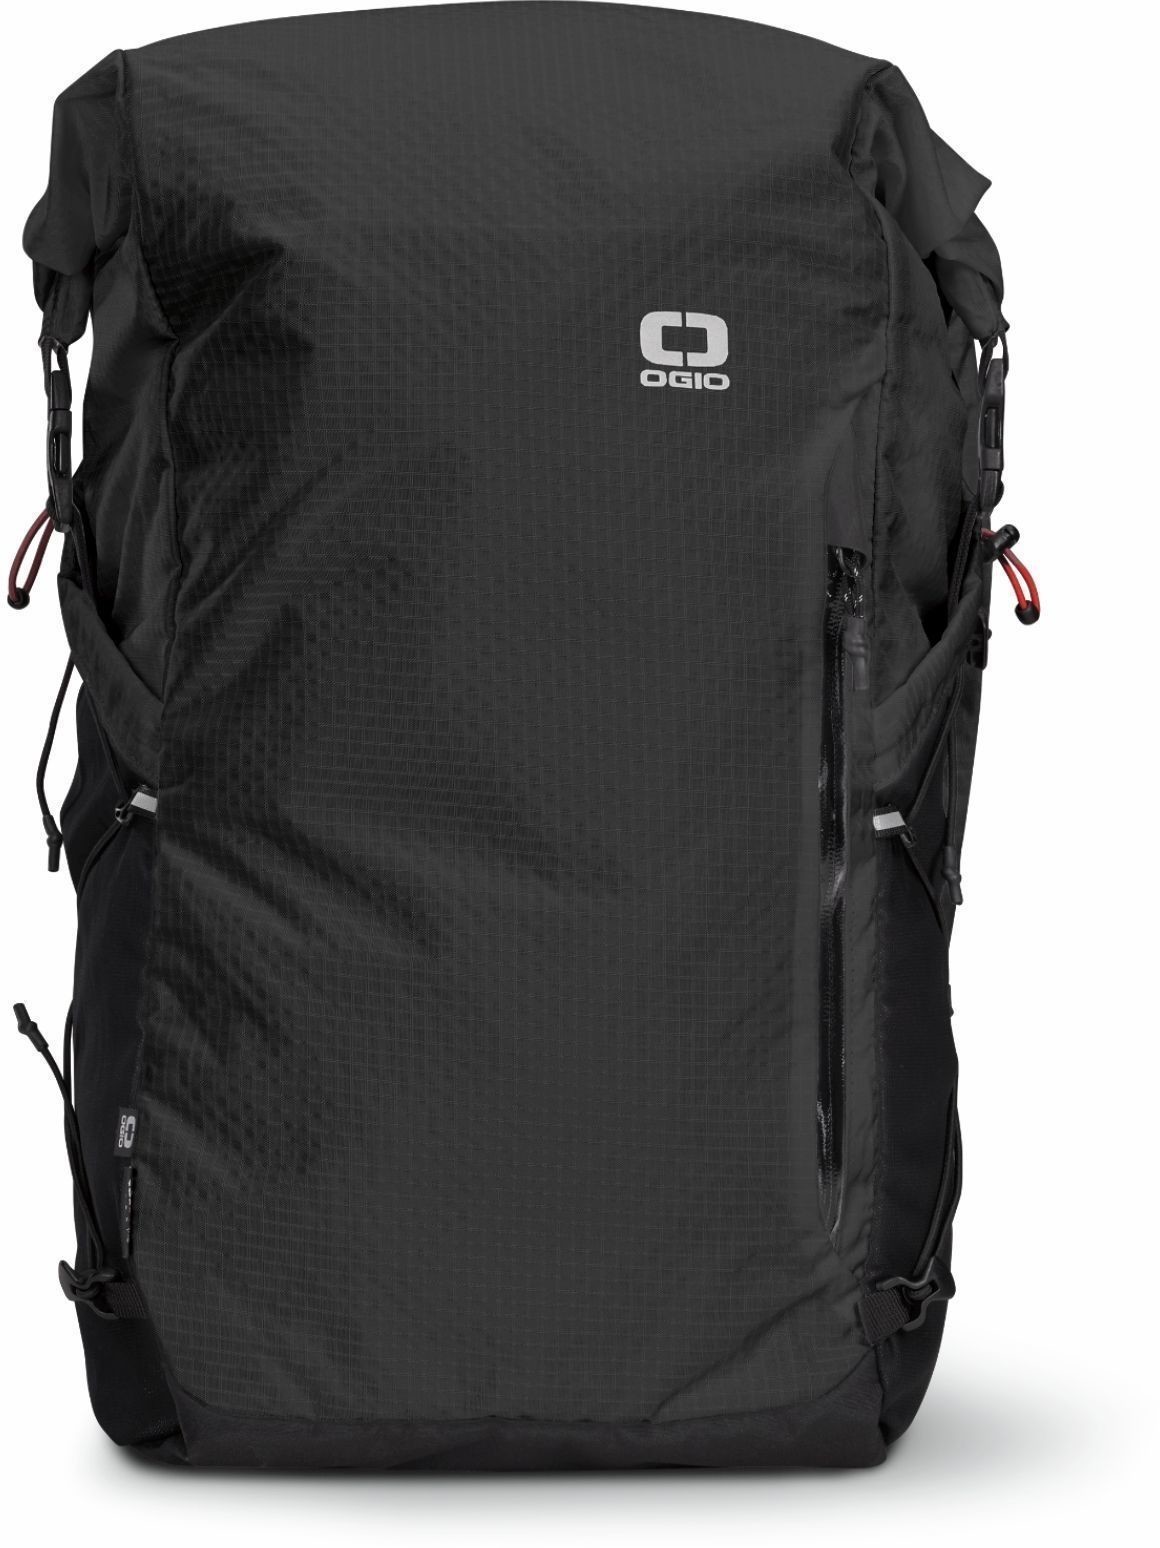 Ogio Fuse 25R Rolltop Backpack Black